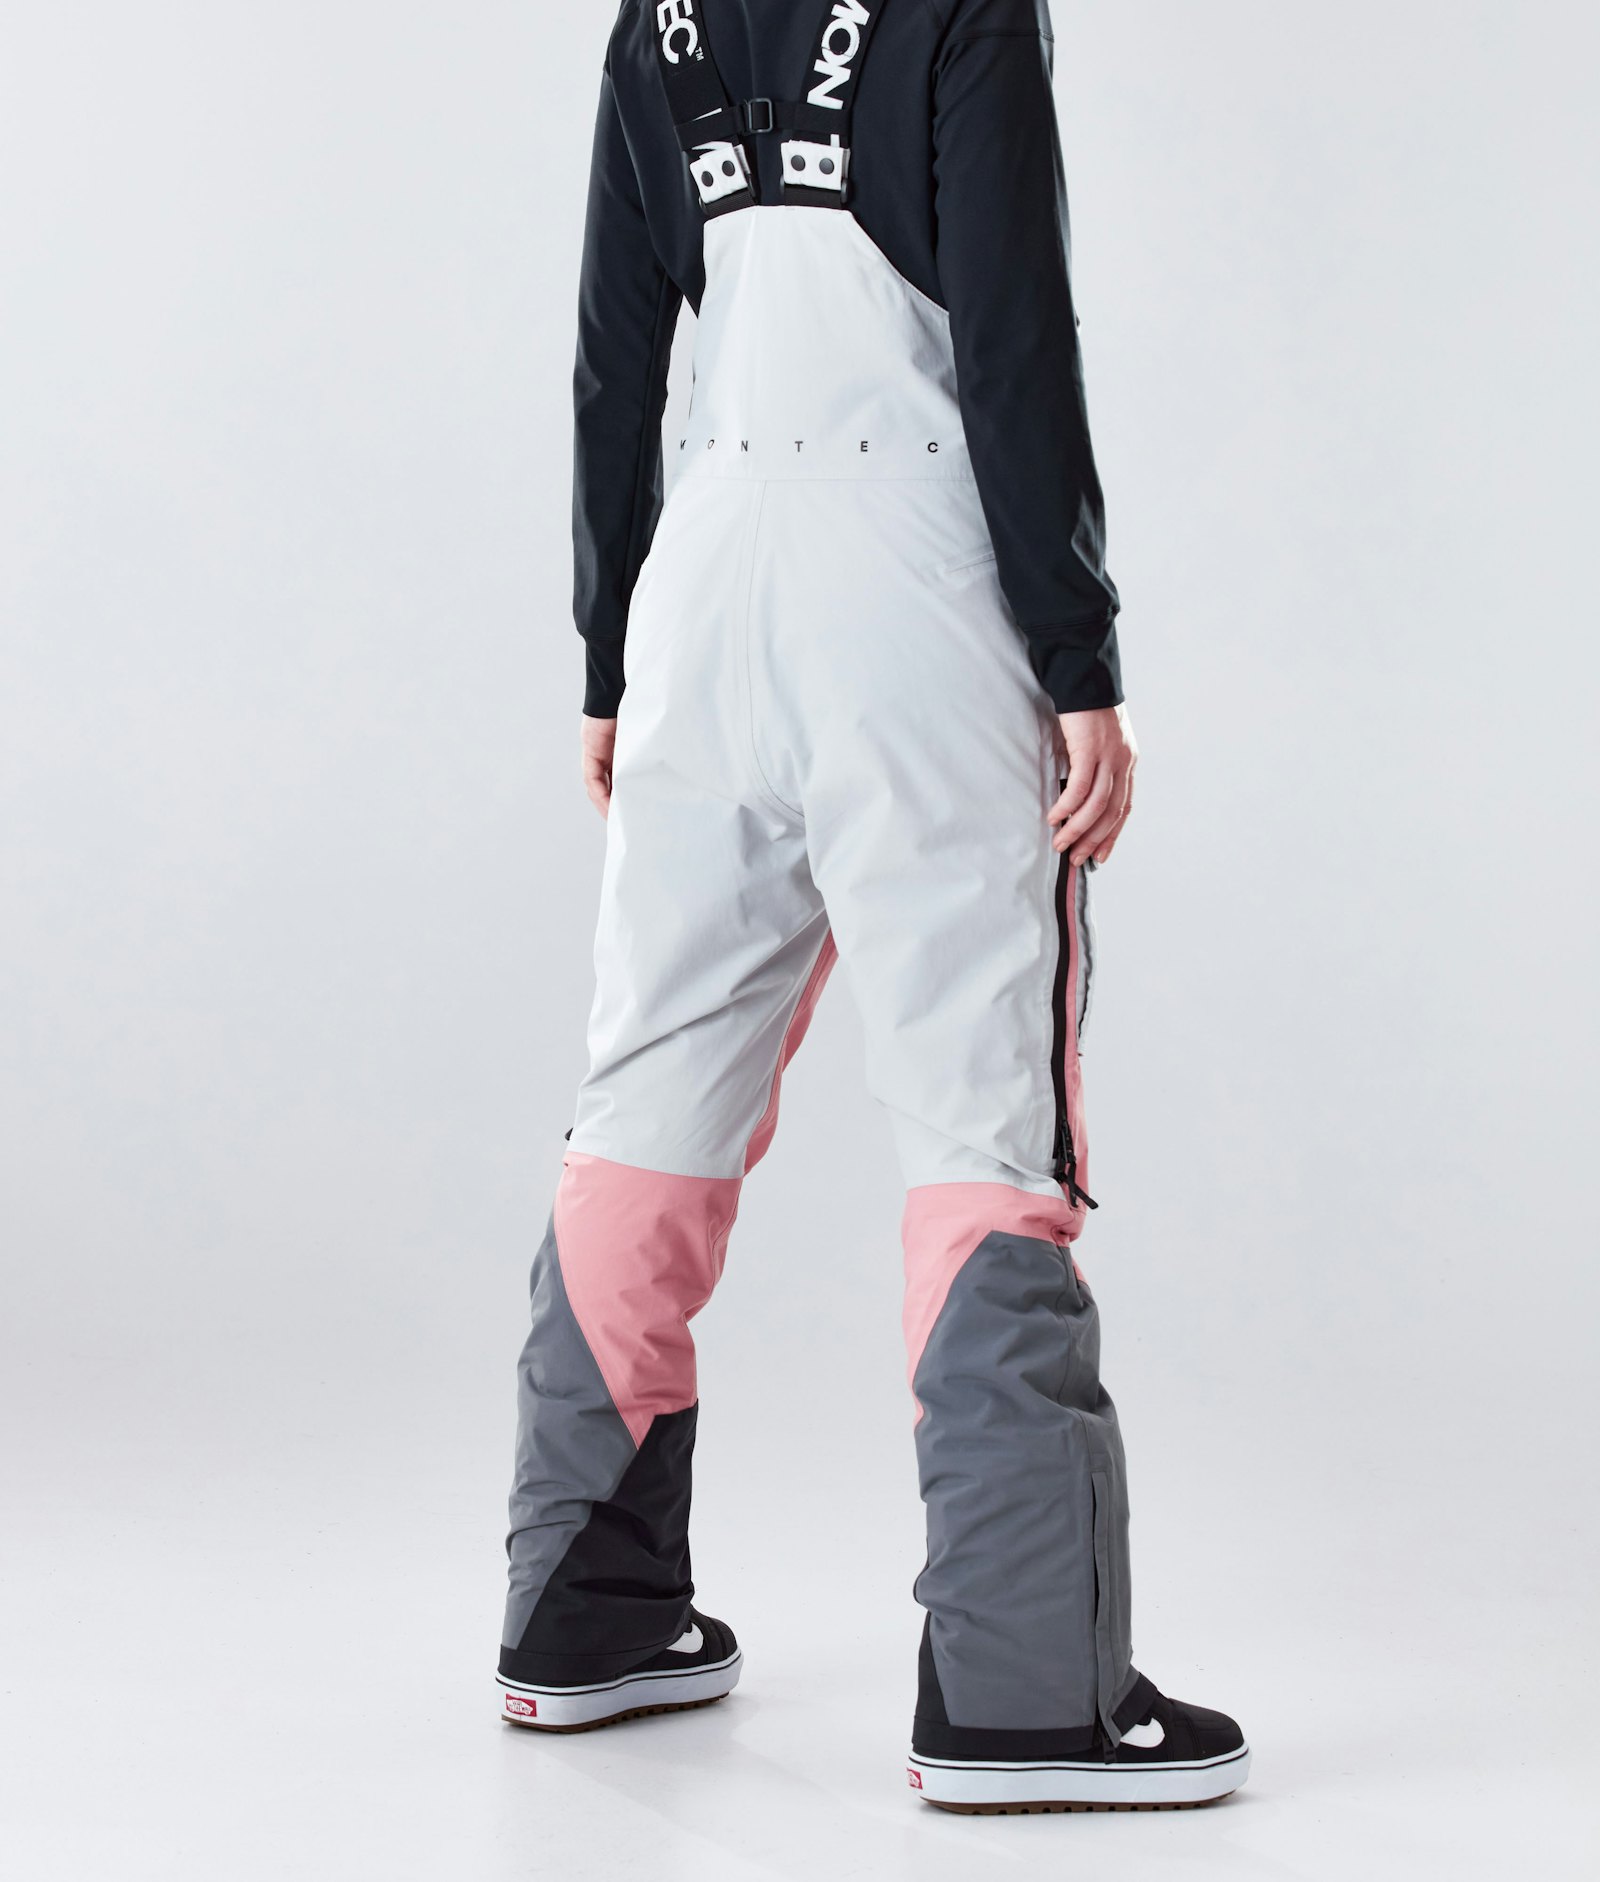 Fawk W 2020 Snowboard Pants Women Light Grey/Pink/Light Pearl